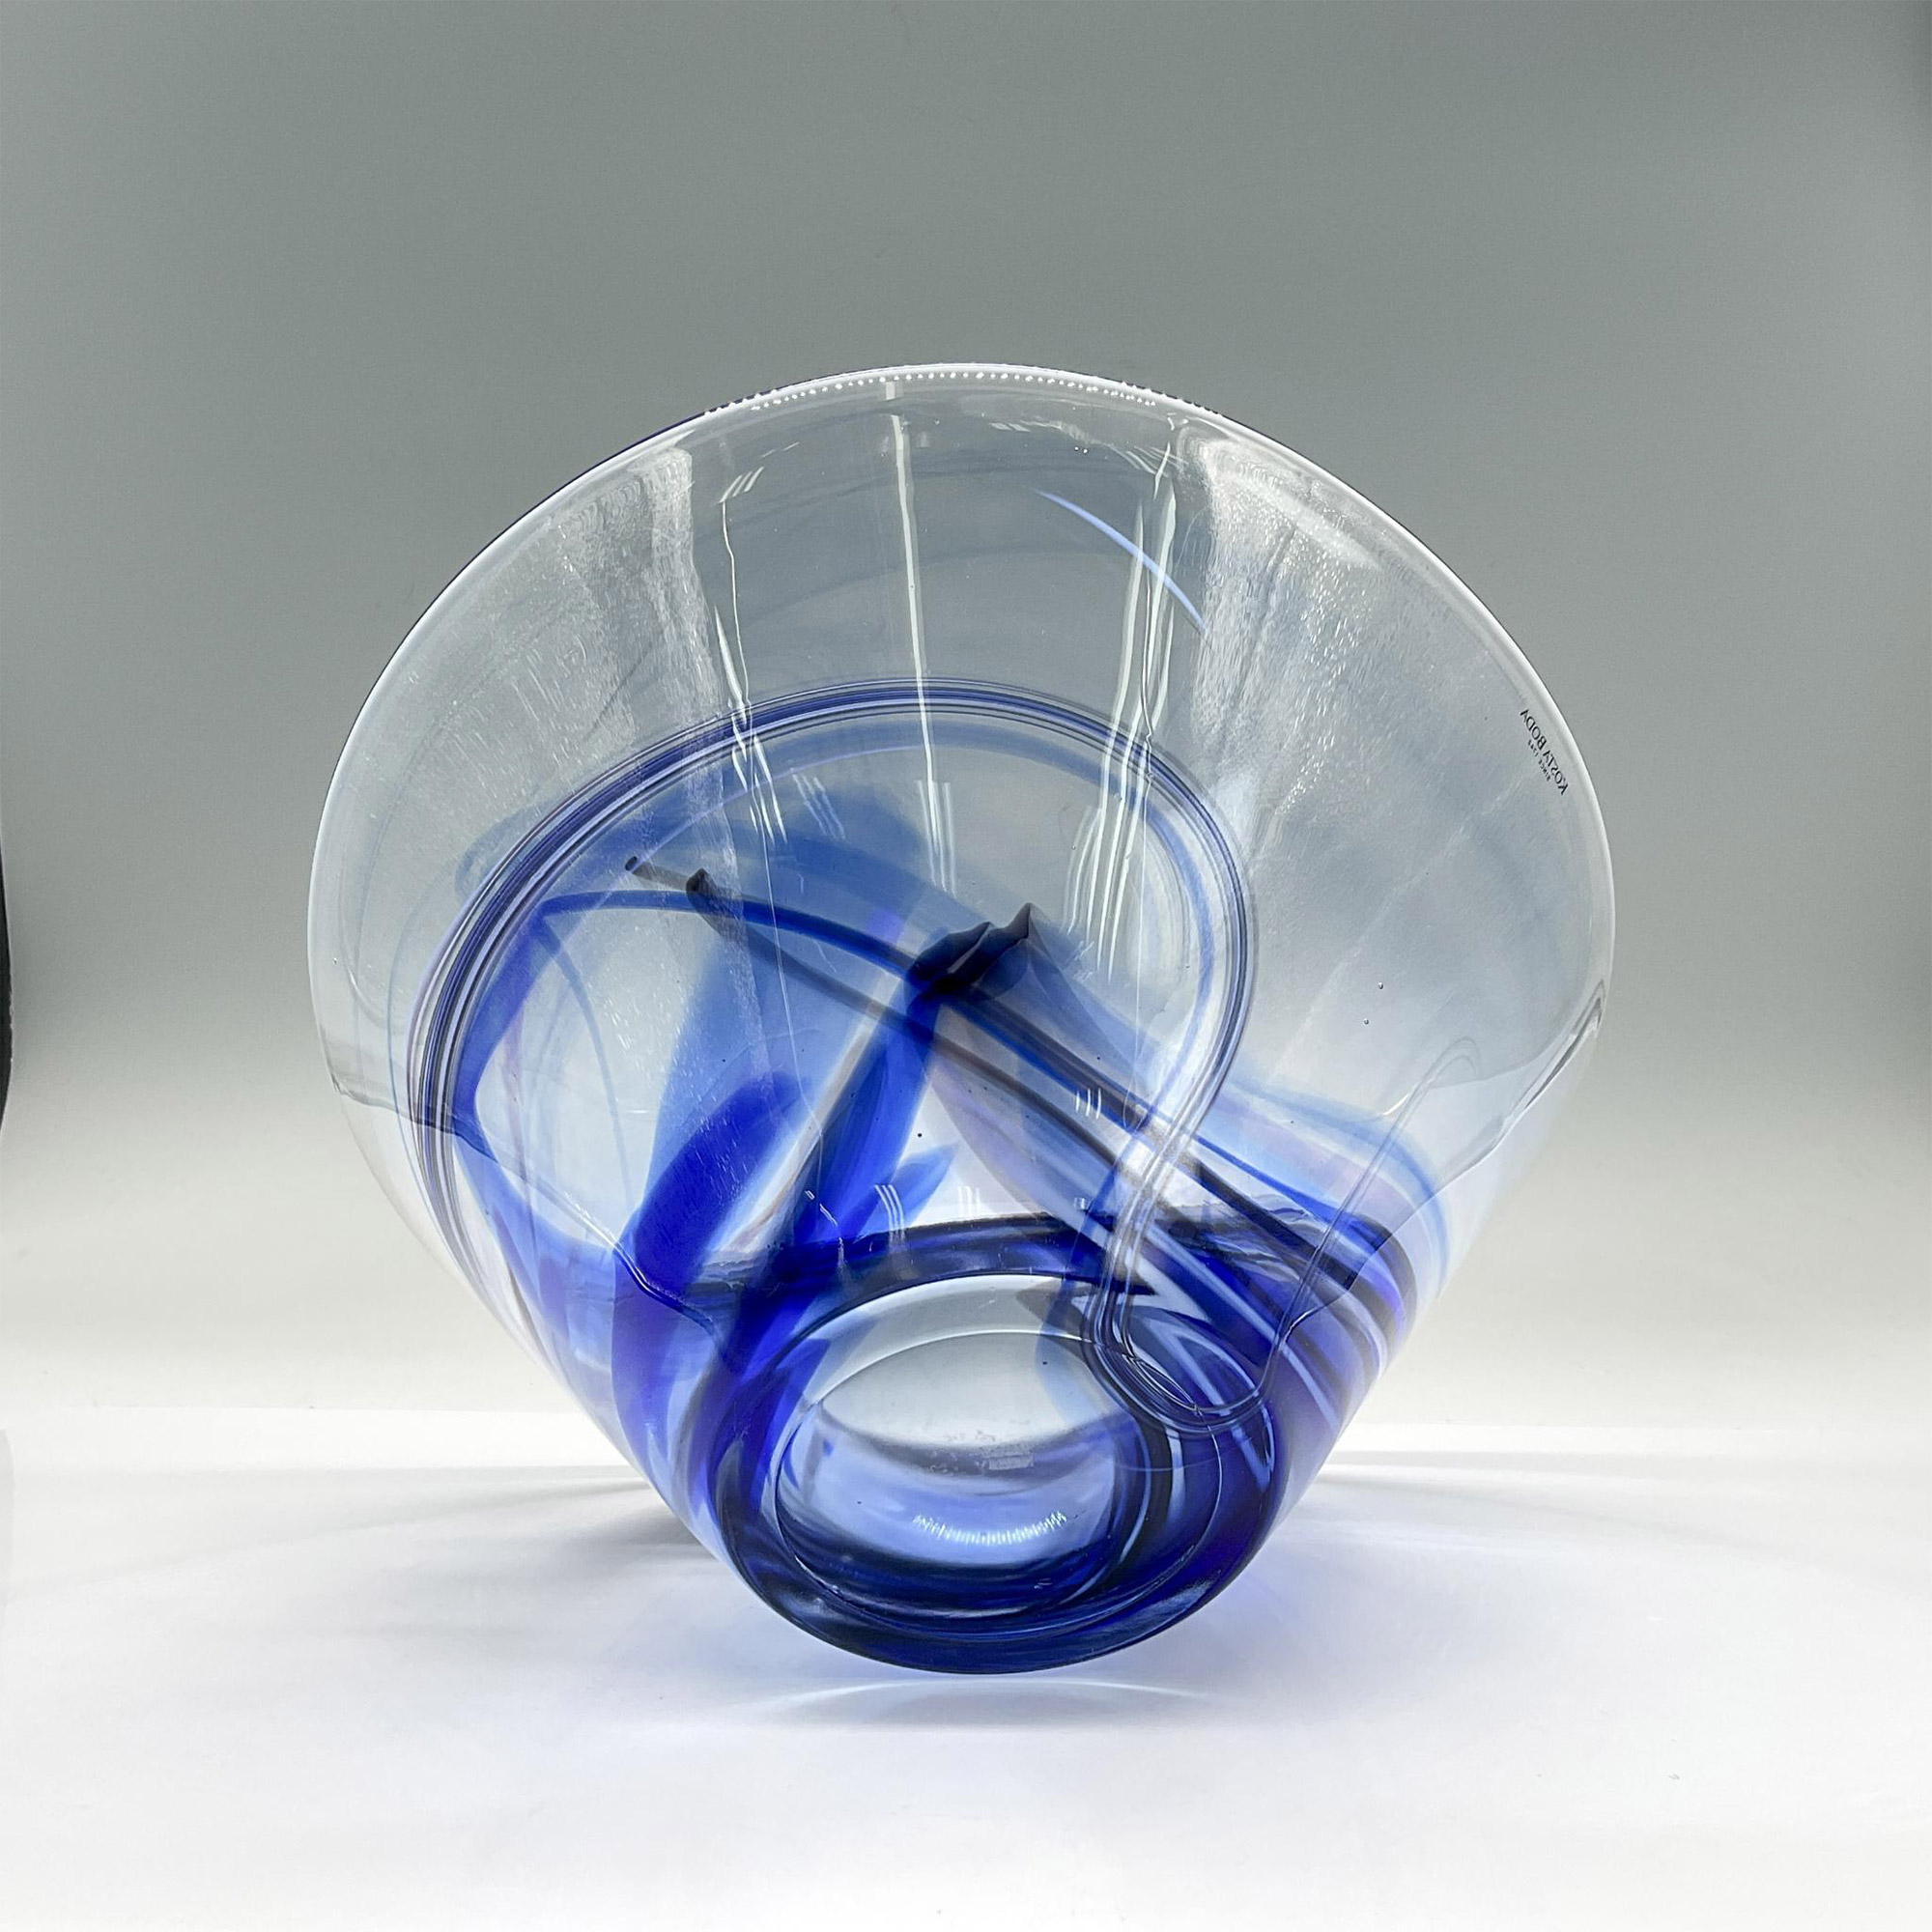 Kosta Boda Glass Bowl, Blue Swirls - Image 3 of 3